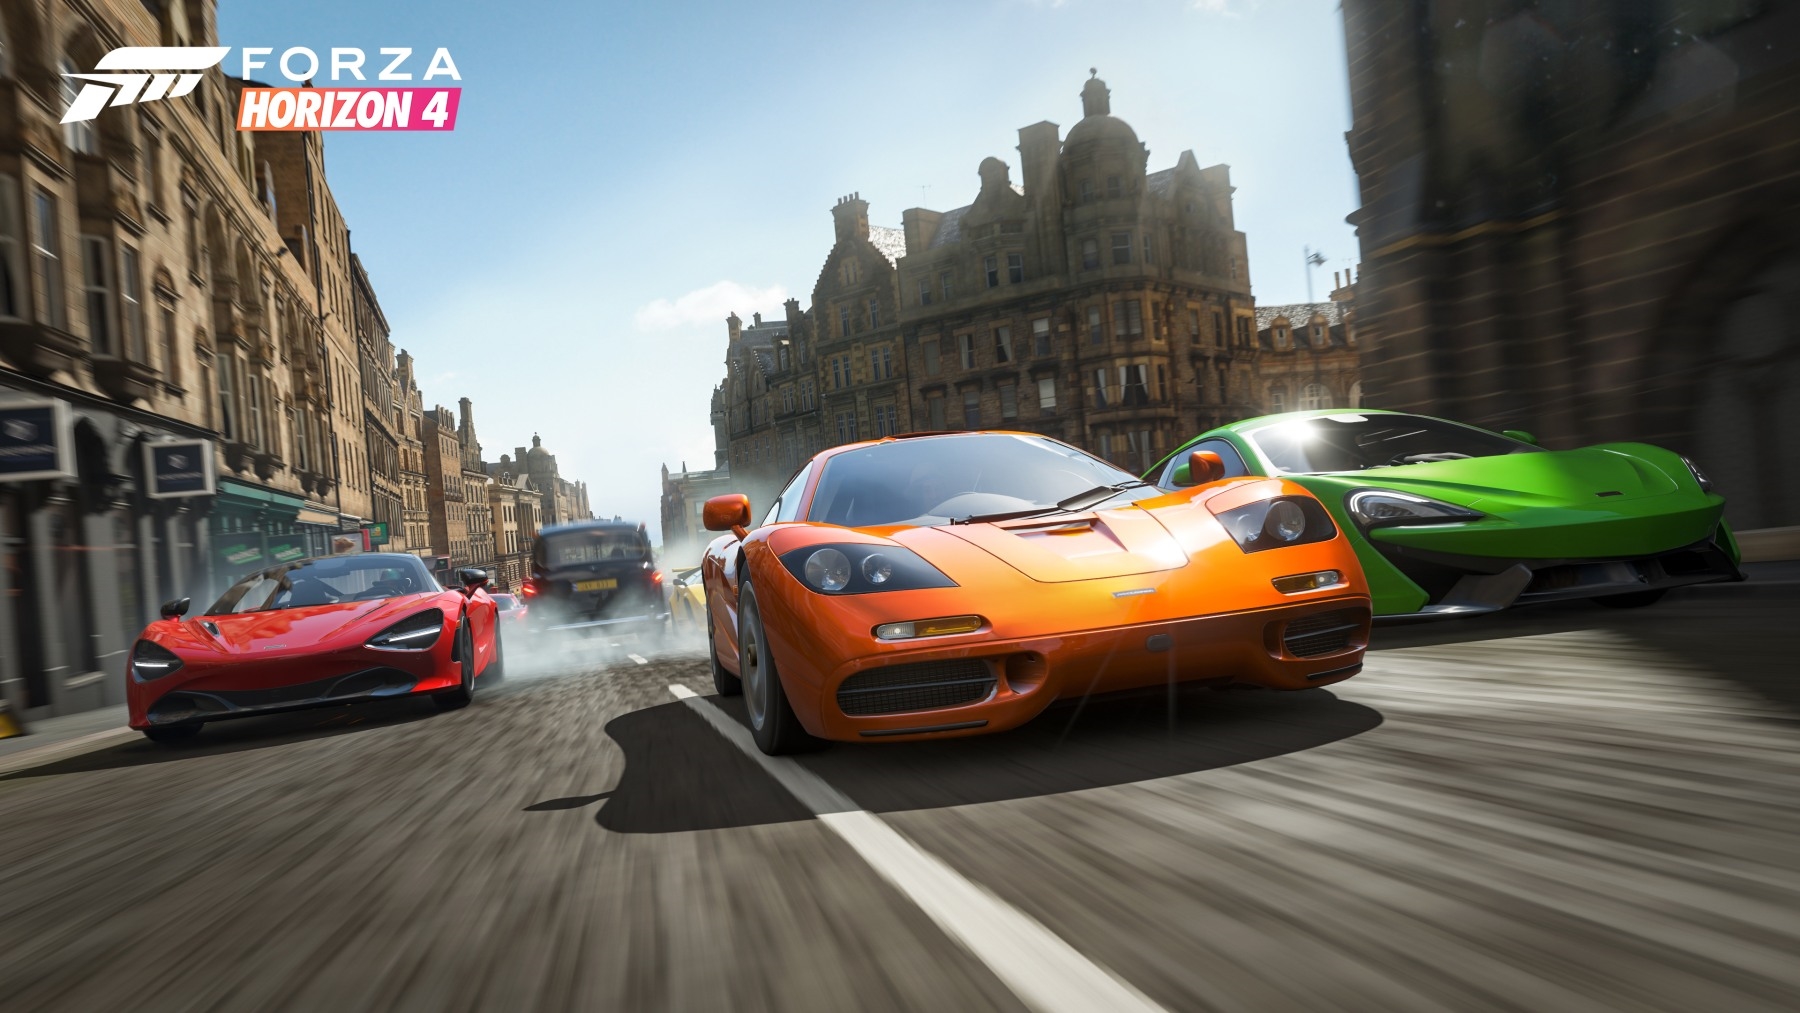 'Forza Horizon 4' activates in-game bonuses for Mixer streams | DeviceDaily.com